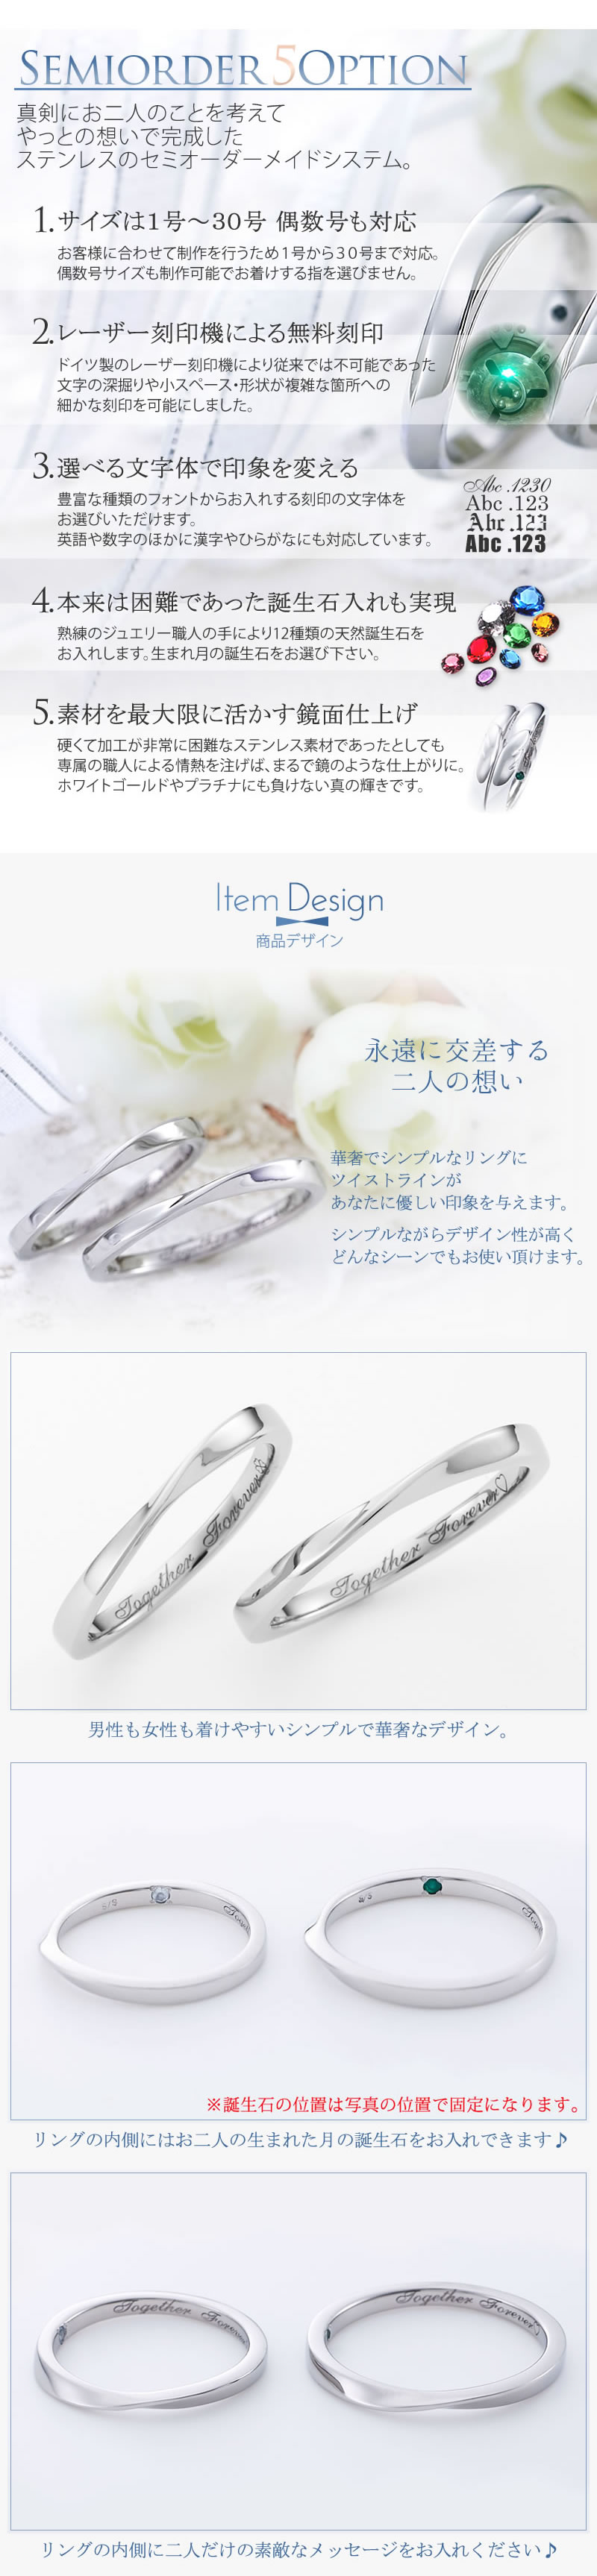 【結婚指輪】セミオーダーメイドステンレスリング ST111R-KS